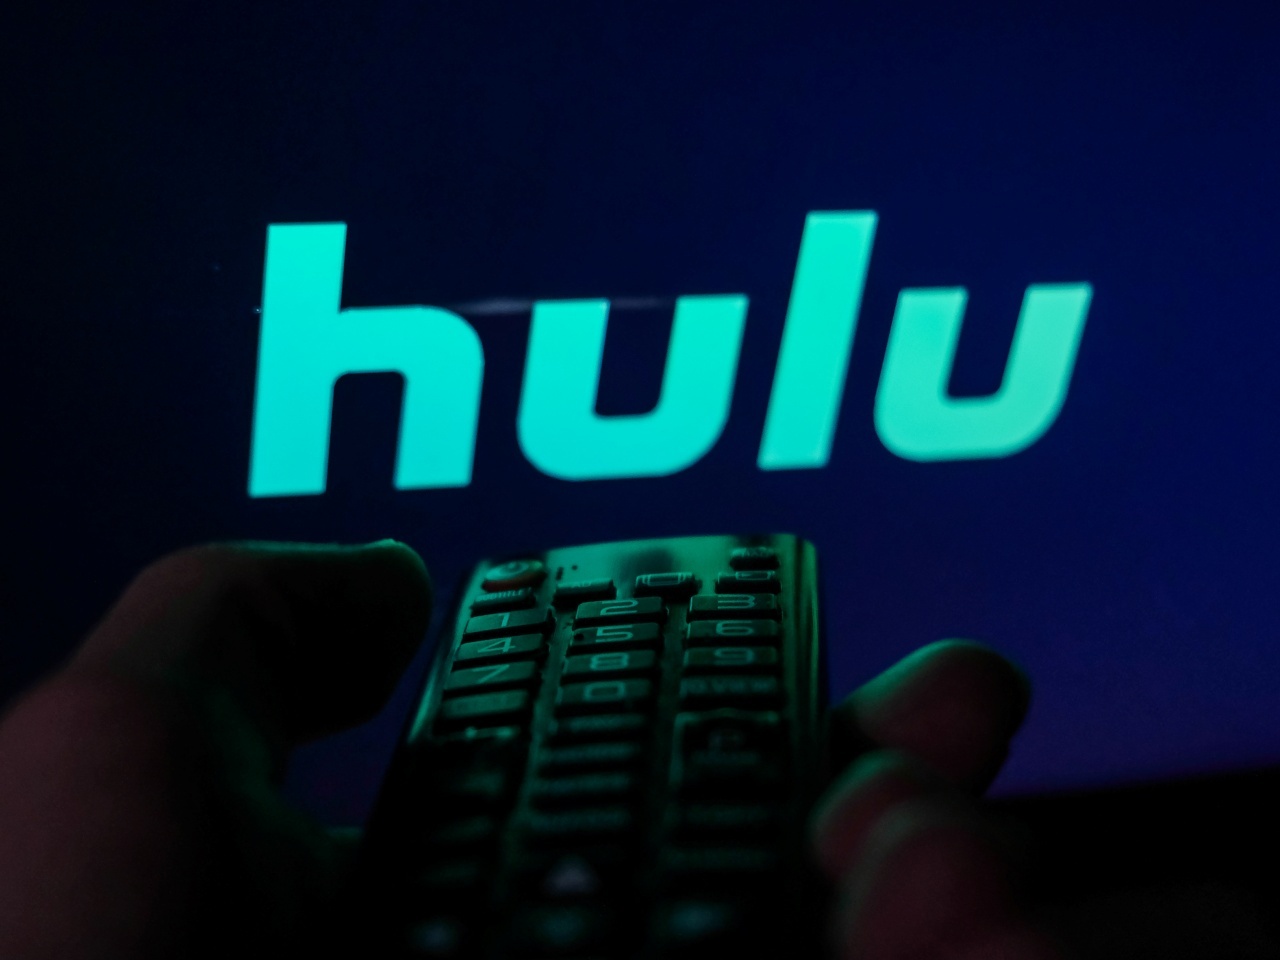 huluのロゴを表示したテレビ